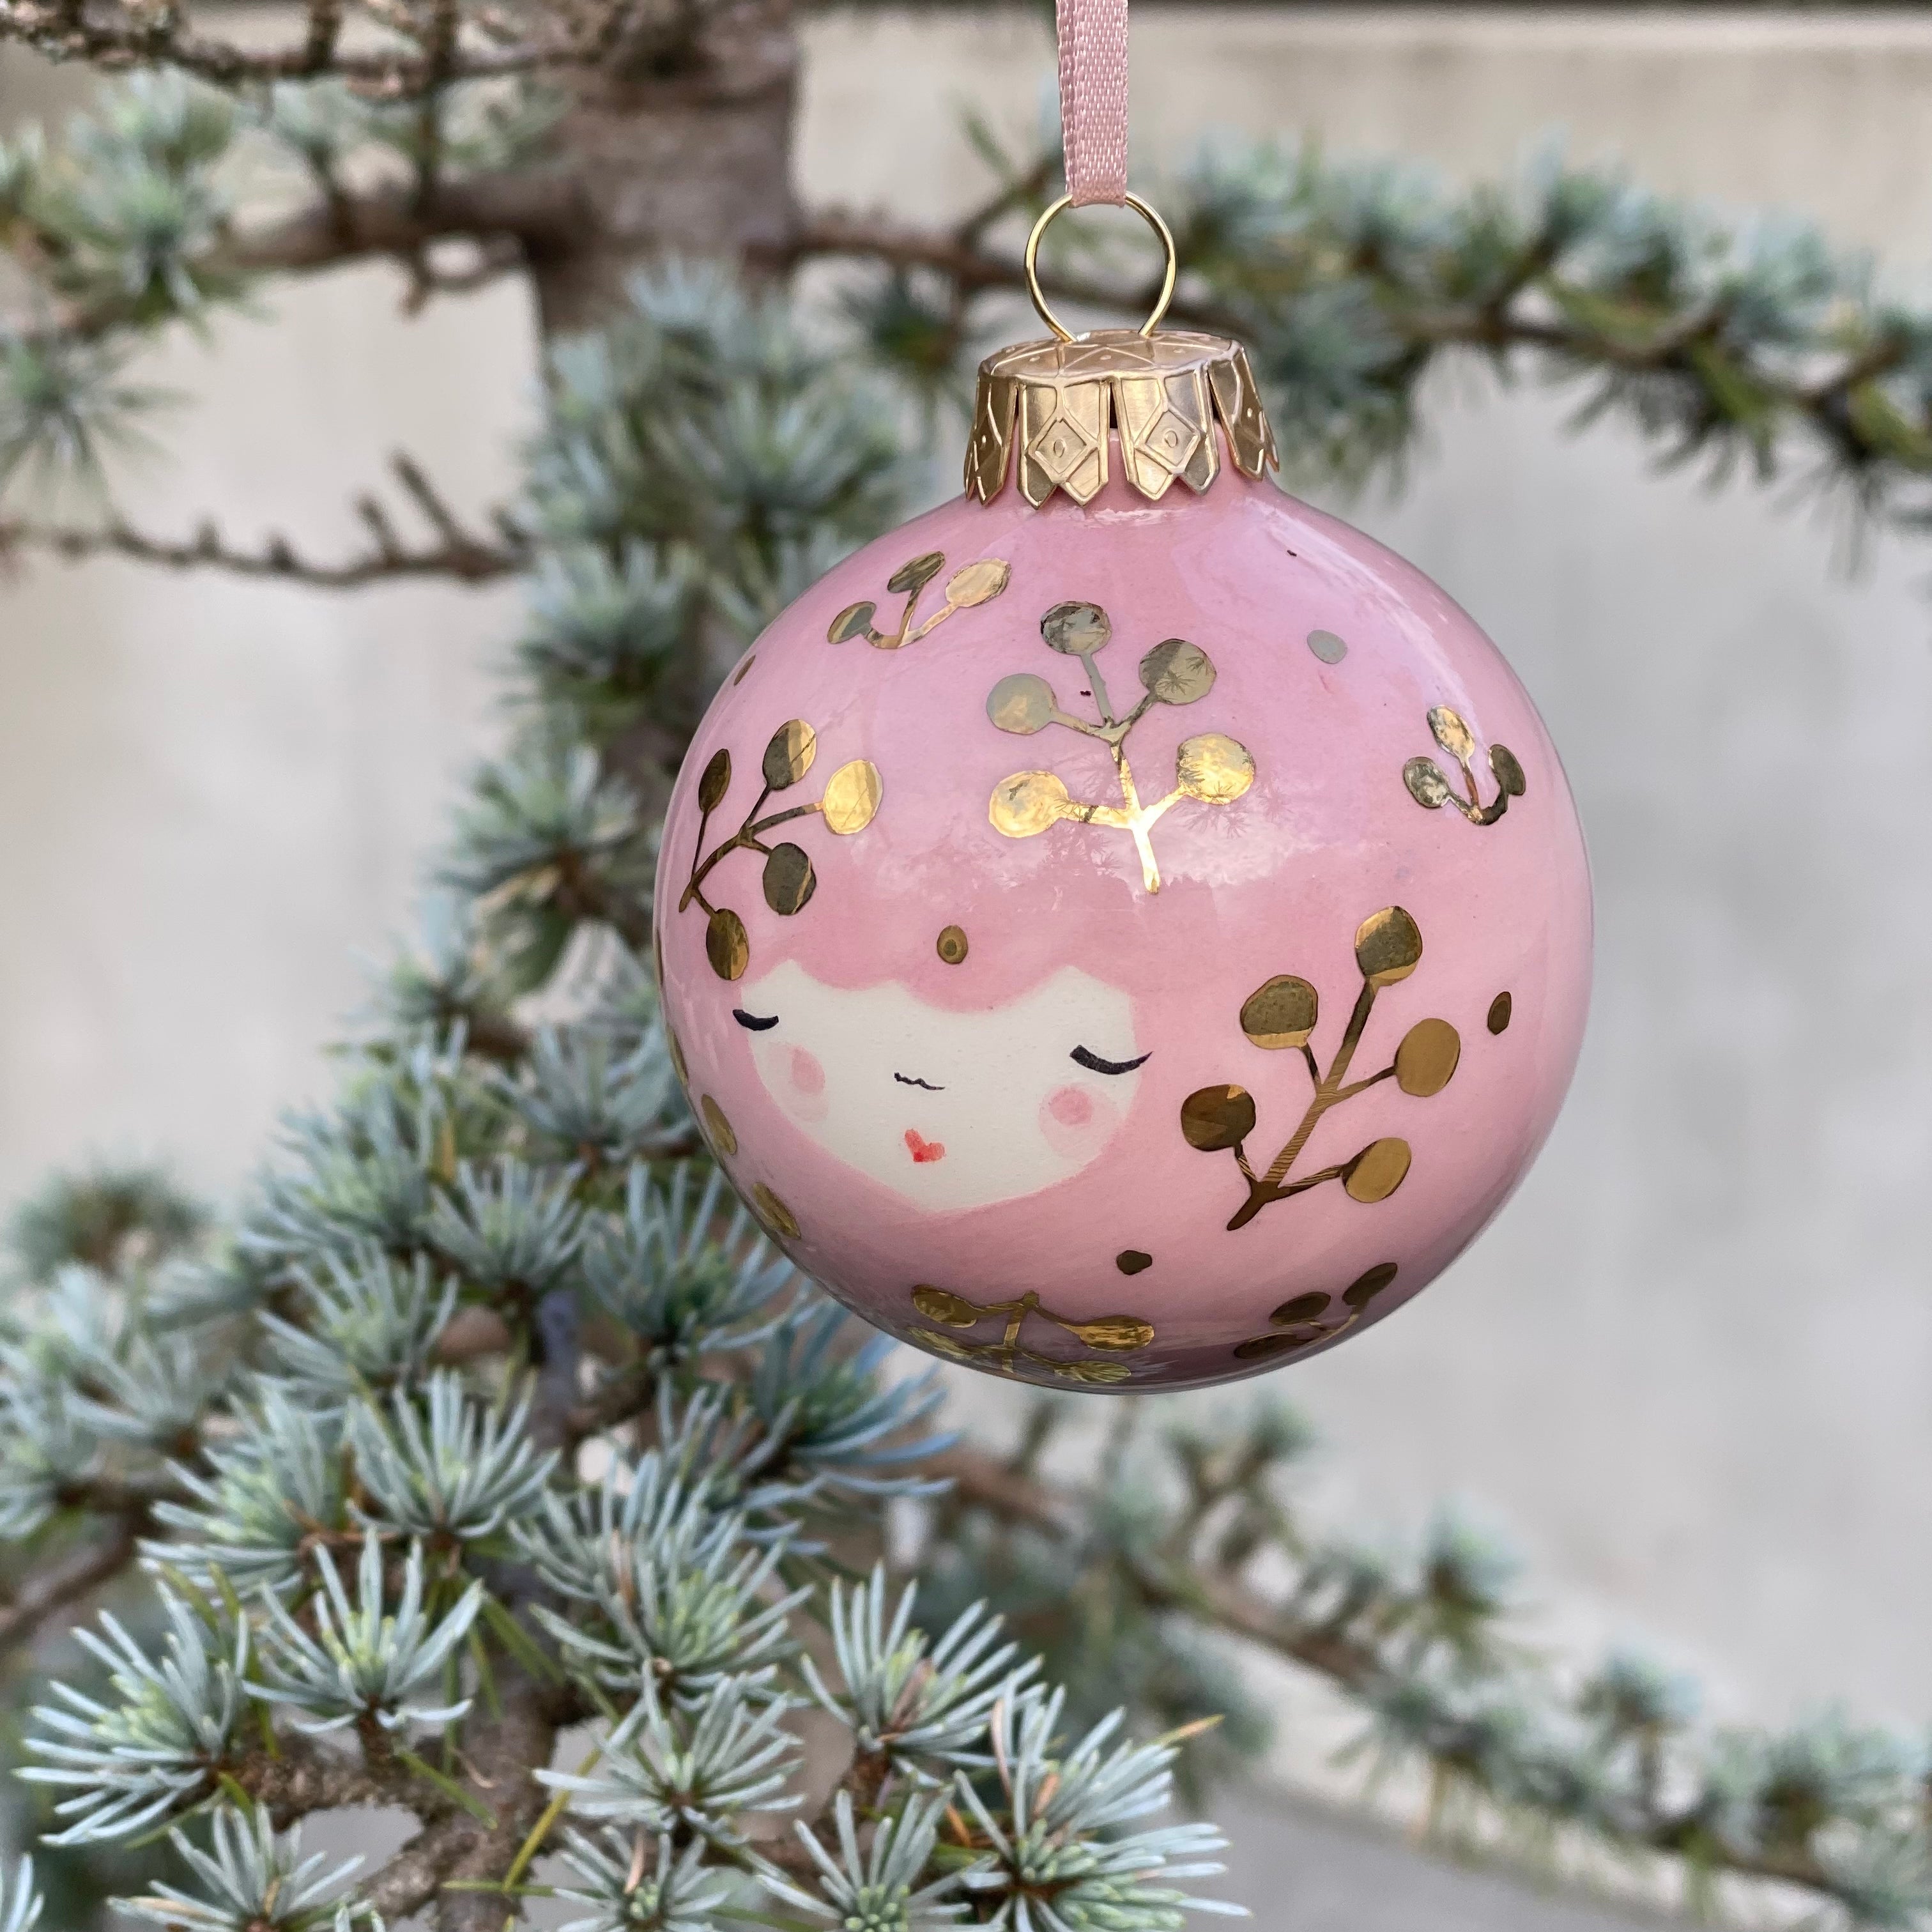 Marinski Heartmade's Christmas ball petals - pink